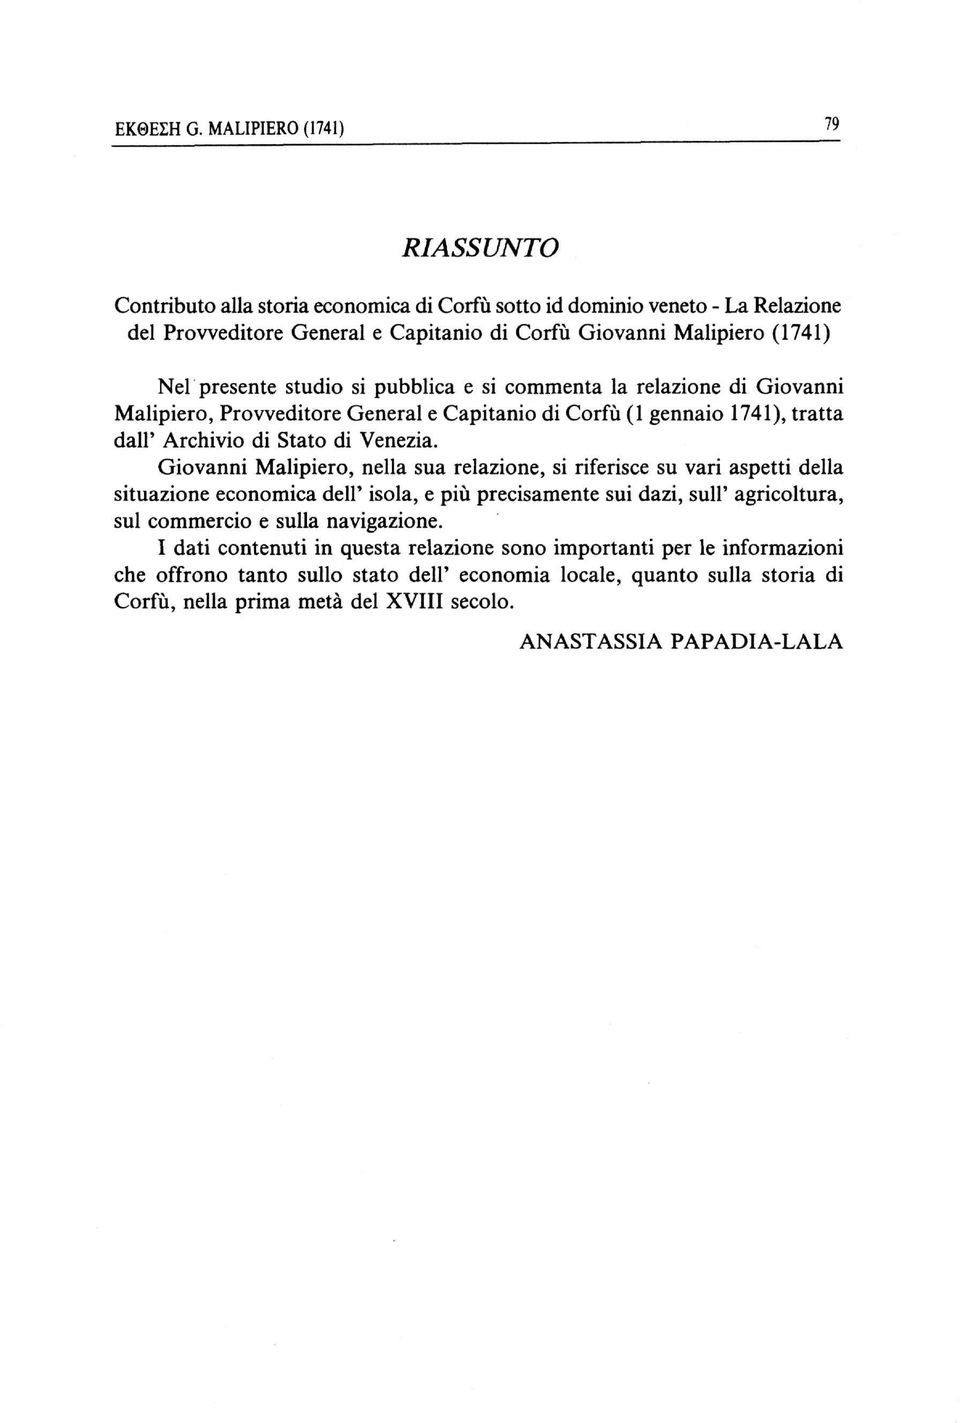 studio si pubblica e si commenta la relazione di Giovanni Malipiero, Provveditore General e Capitanio di Corfù (1 gennaio 1741), tratta dall' Archivio di Stato di Venezia.